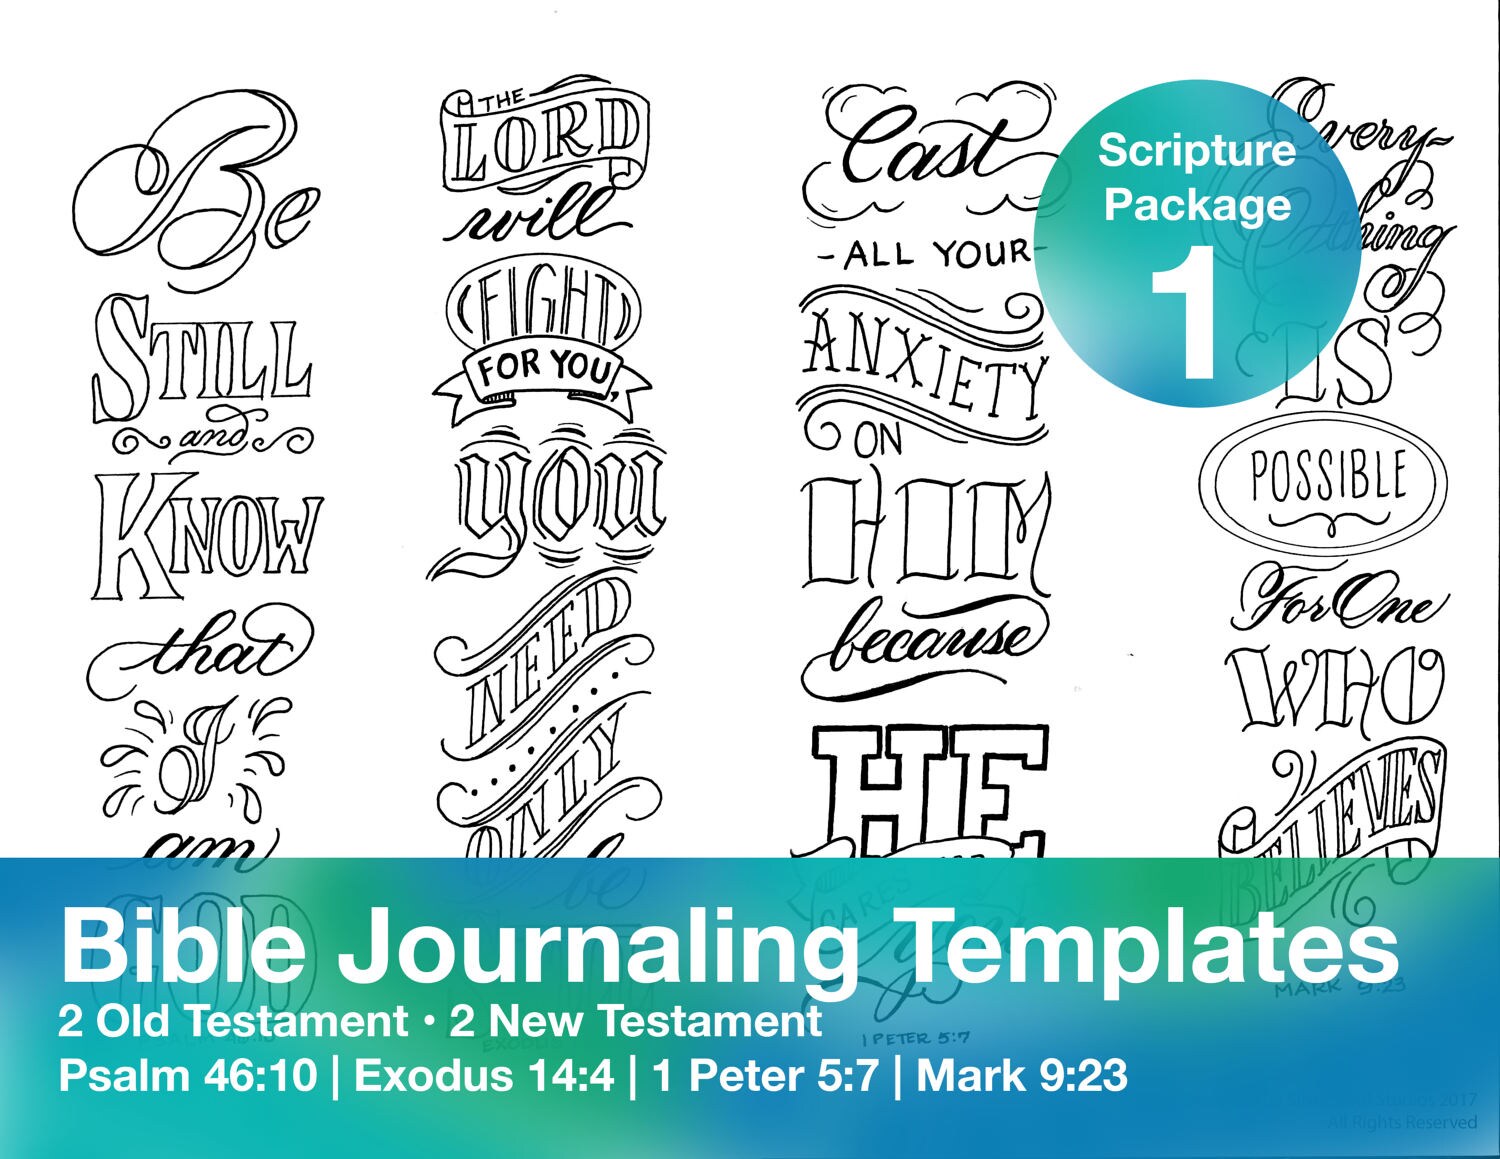 Bible Journaling Kit, Free Indeed / Bible Journaling Printable Templates 